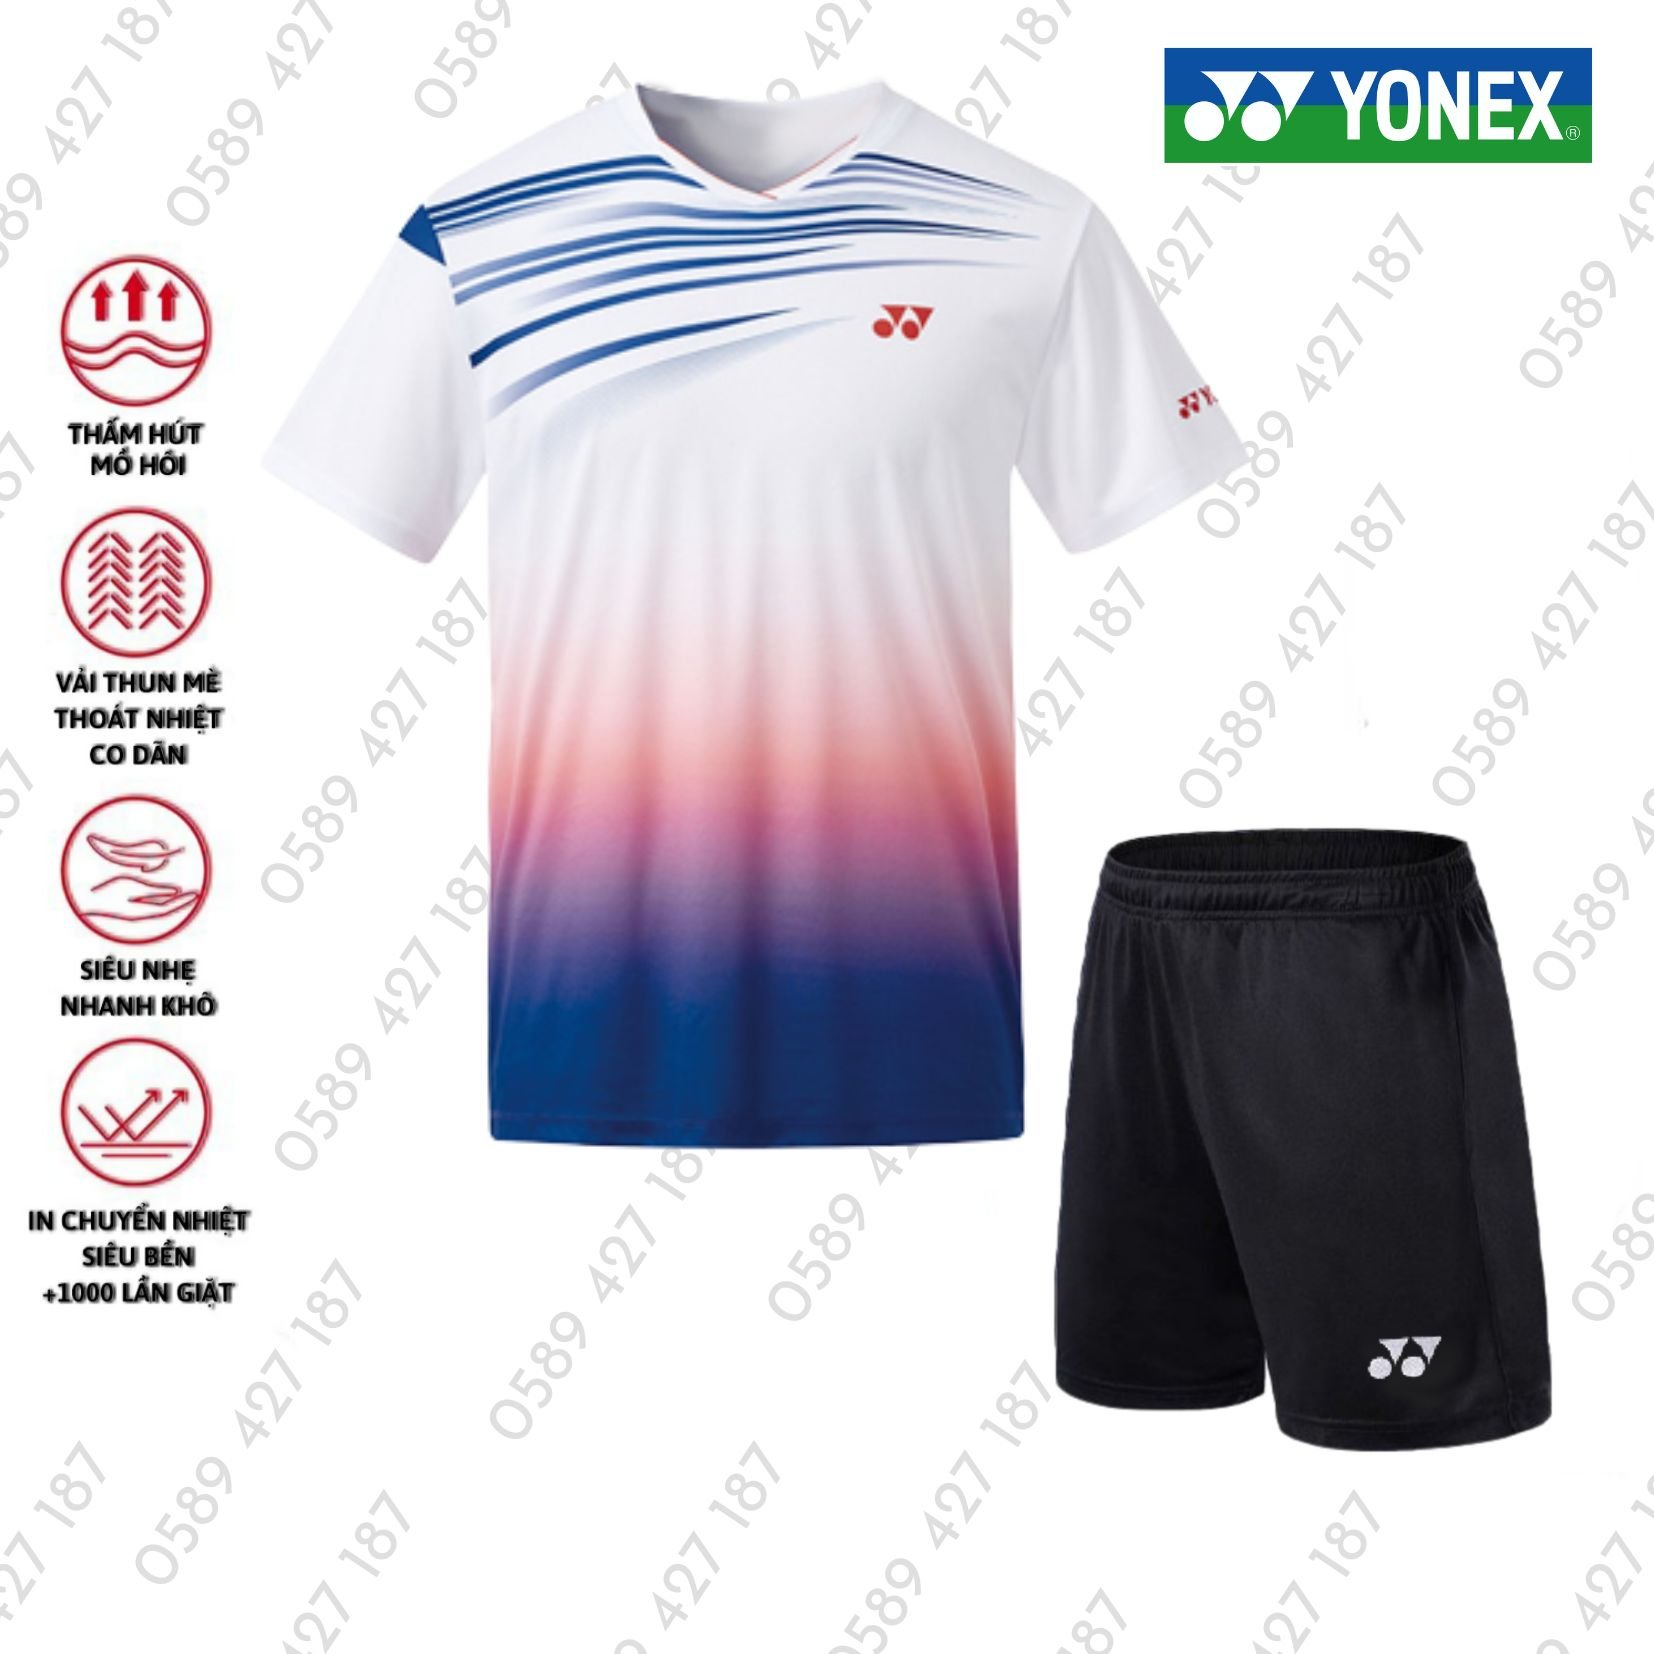 Áo cầu lông, quần cầu lông Yonex chuyên nghiệp mới nhất sử dụng tập luyện và thi đấu cầu lông A298